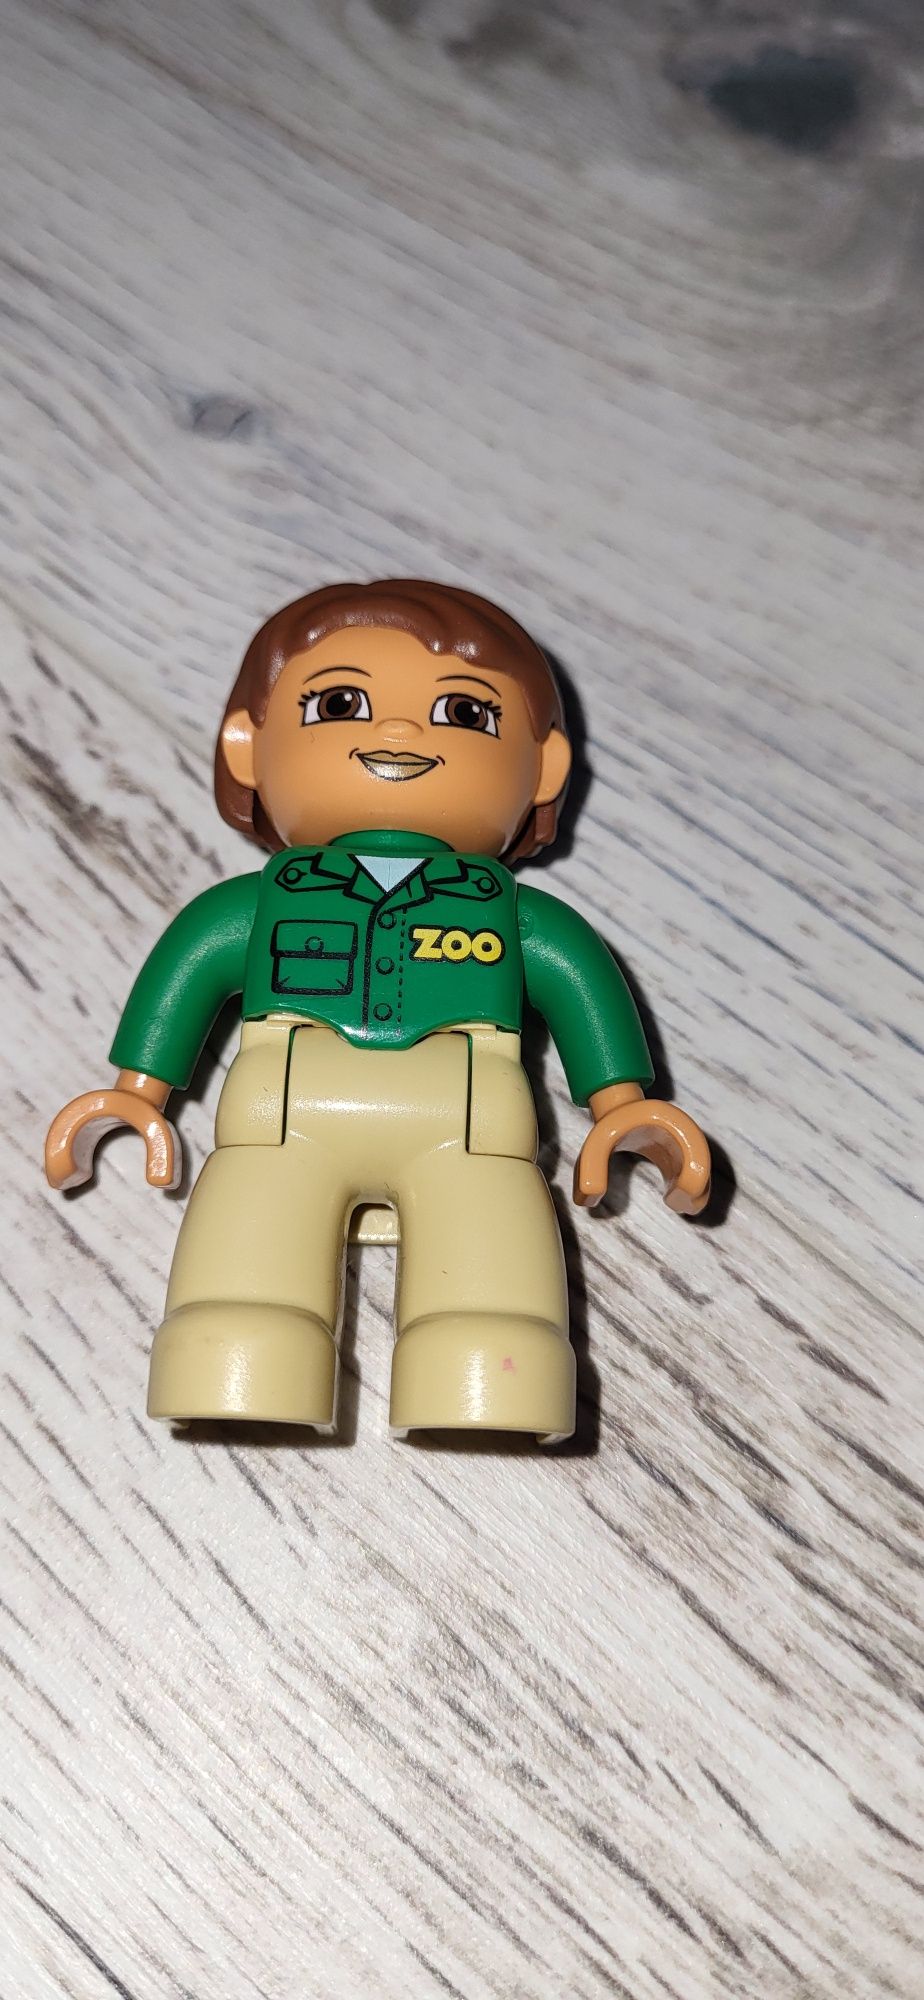 Lego duplo ludzik pani zoo